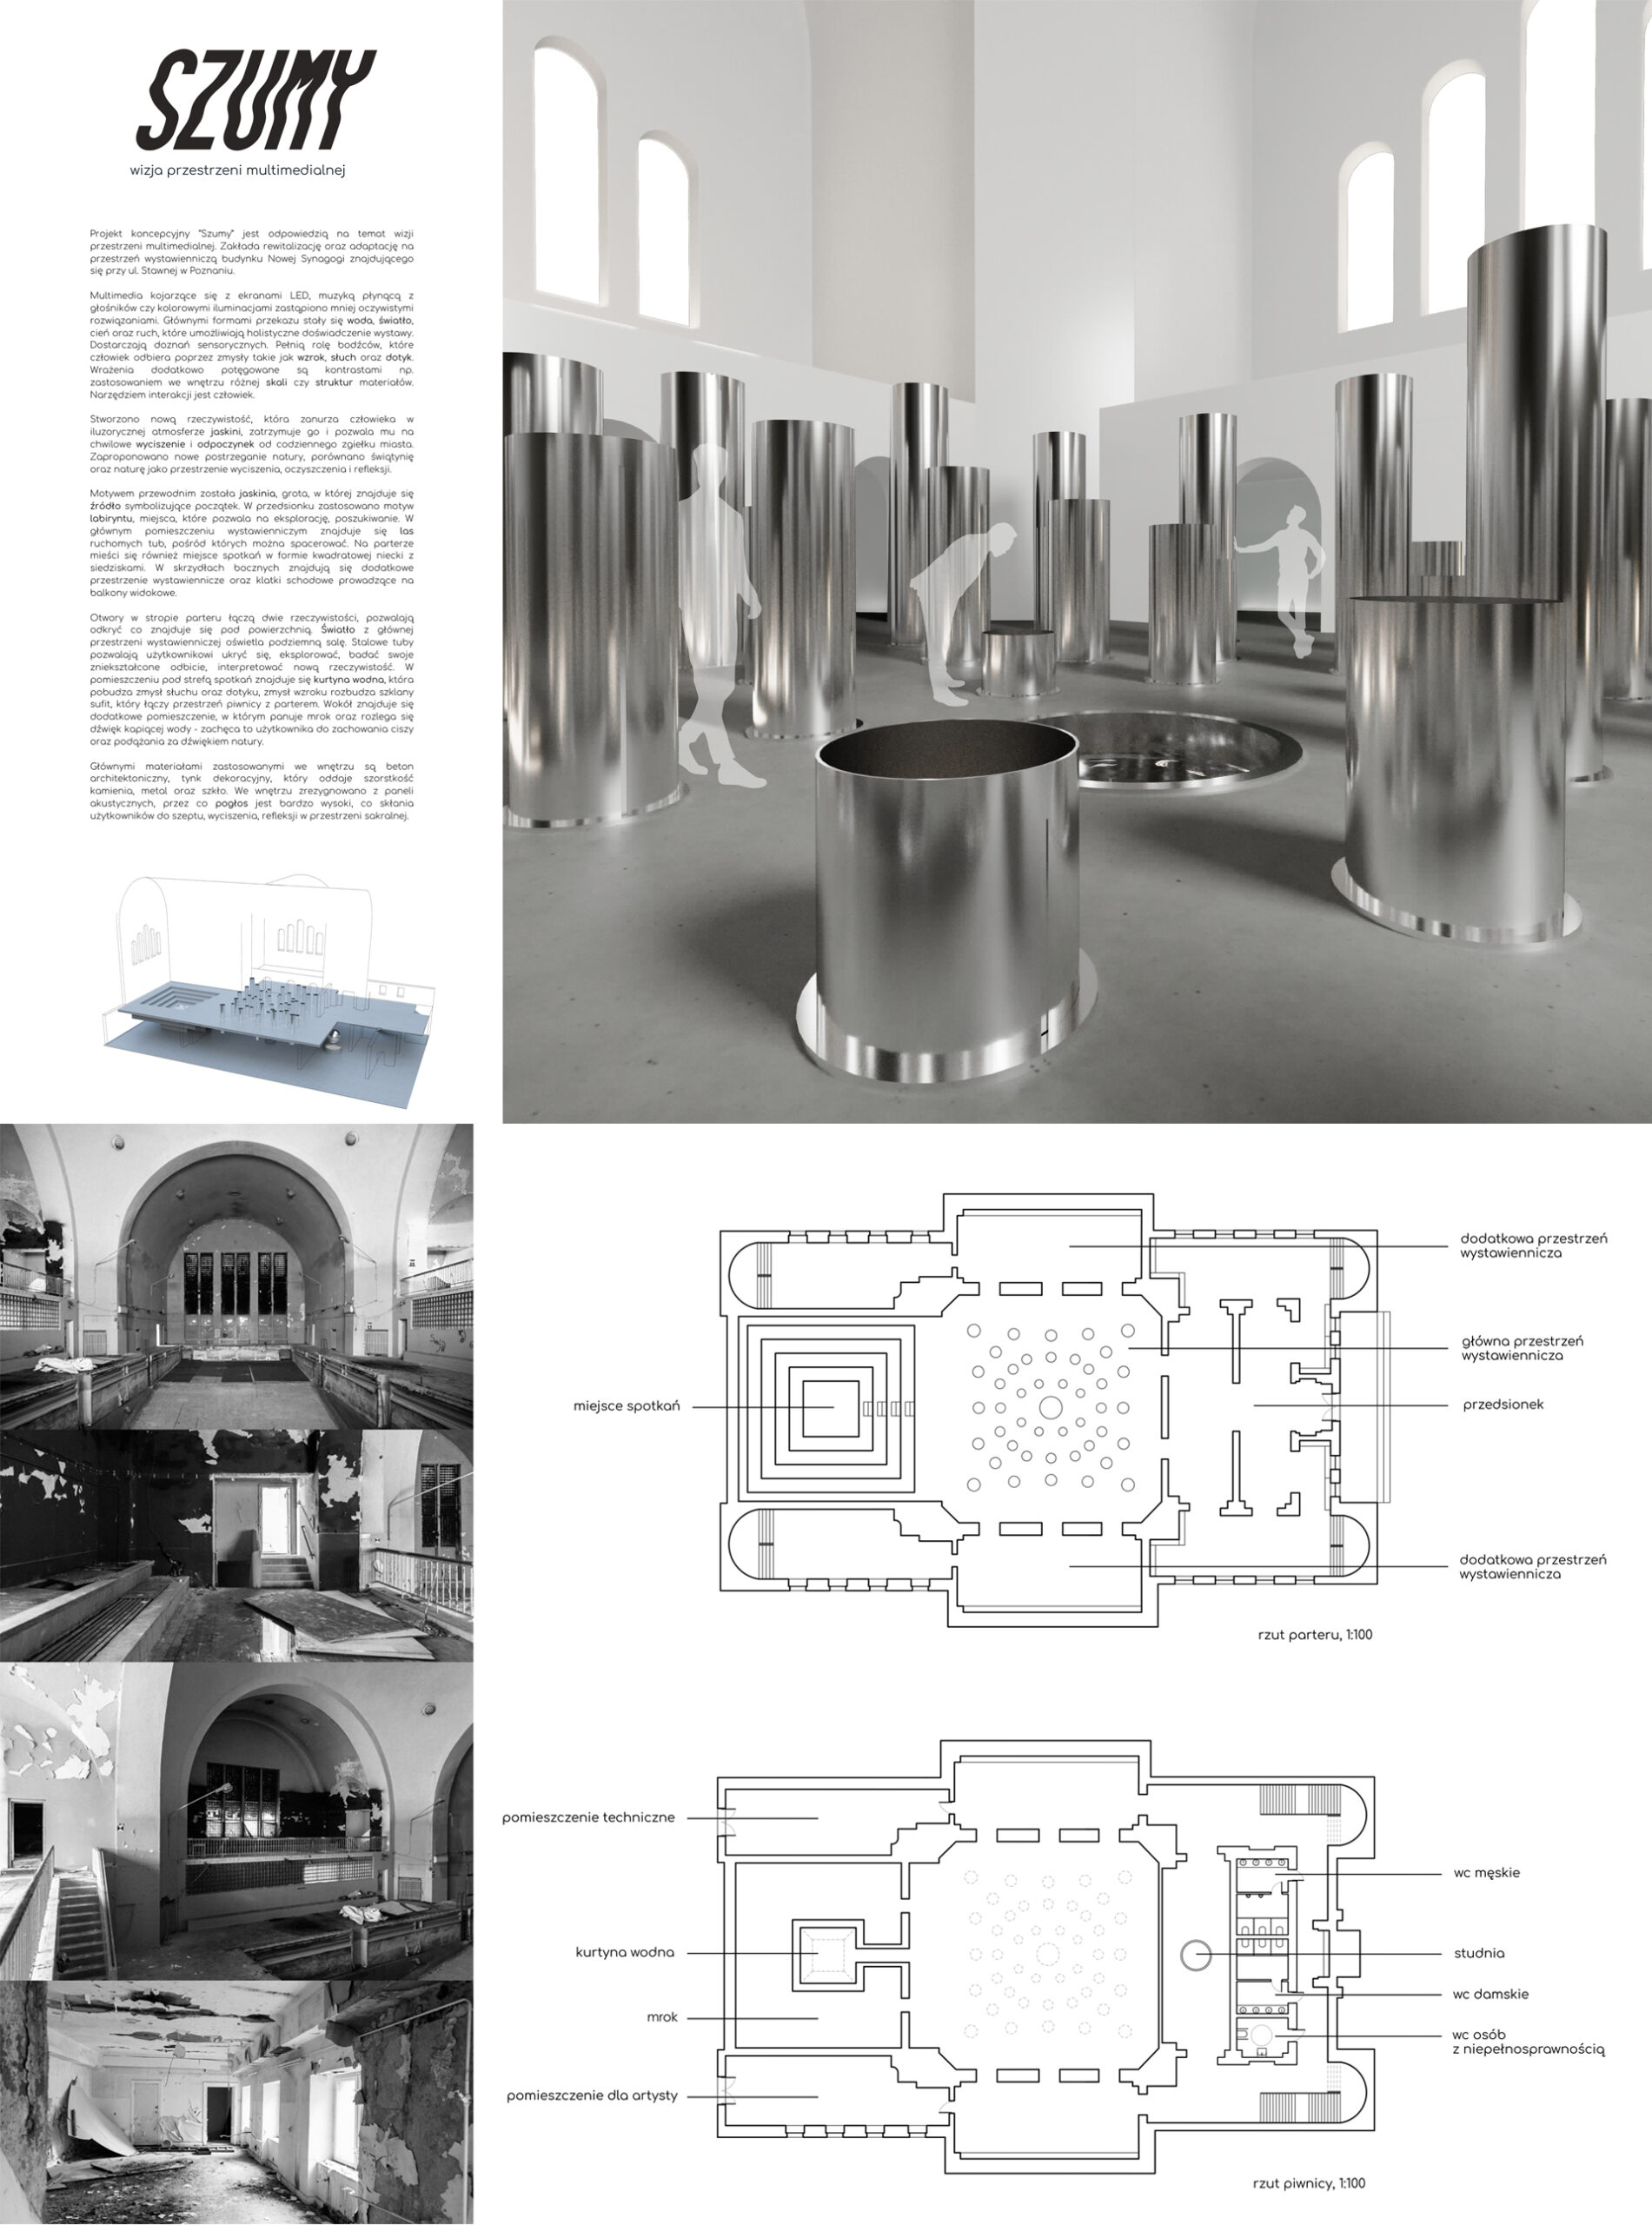 Plansza prezentuje od lewej opis projektu i czarno białe zdjęcia przestrzeni zastanej po prawej ilustrację ukazującą wnętrze głównej sali ekspozycyjnej, poniżej dwa rzuty piwnicy i parteru.